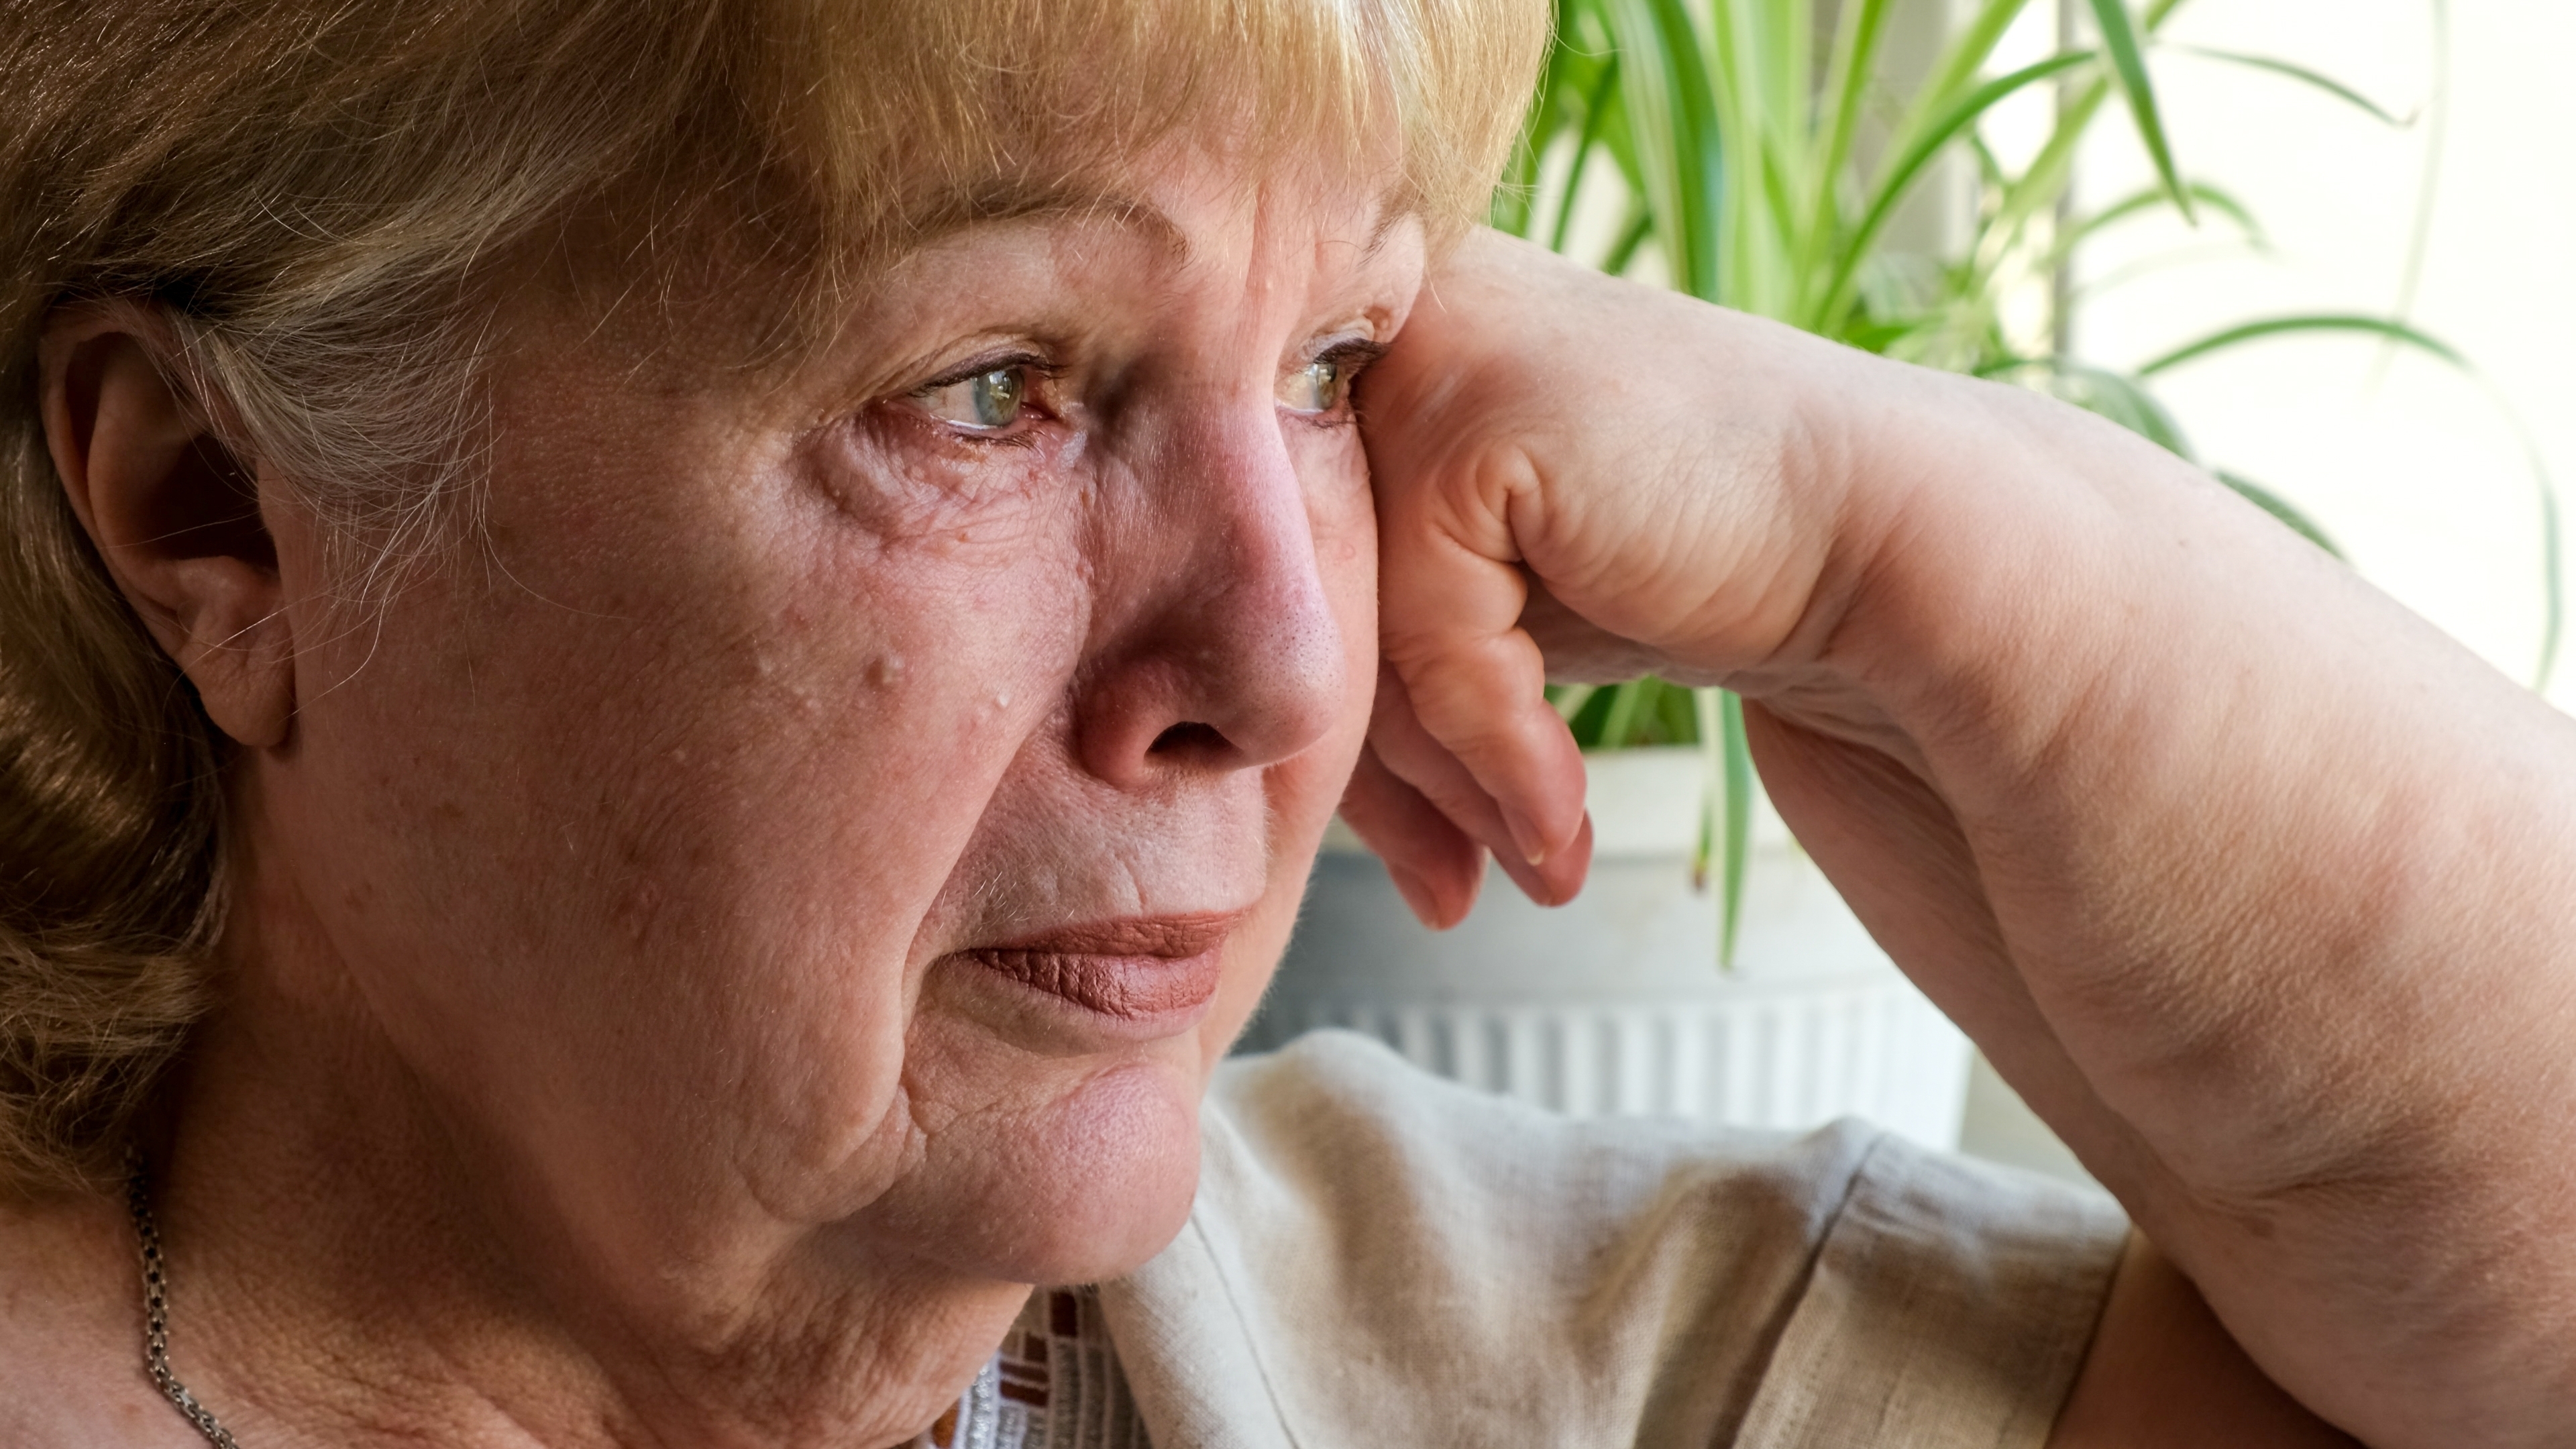 An elderly woman looking worried | Source: Shutterstock